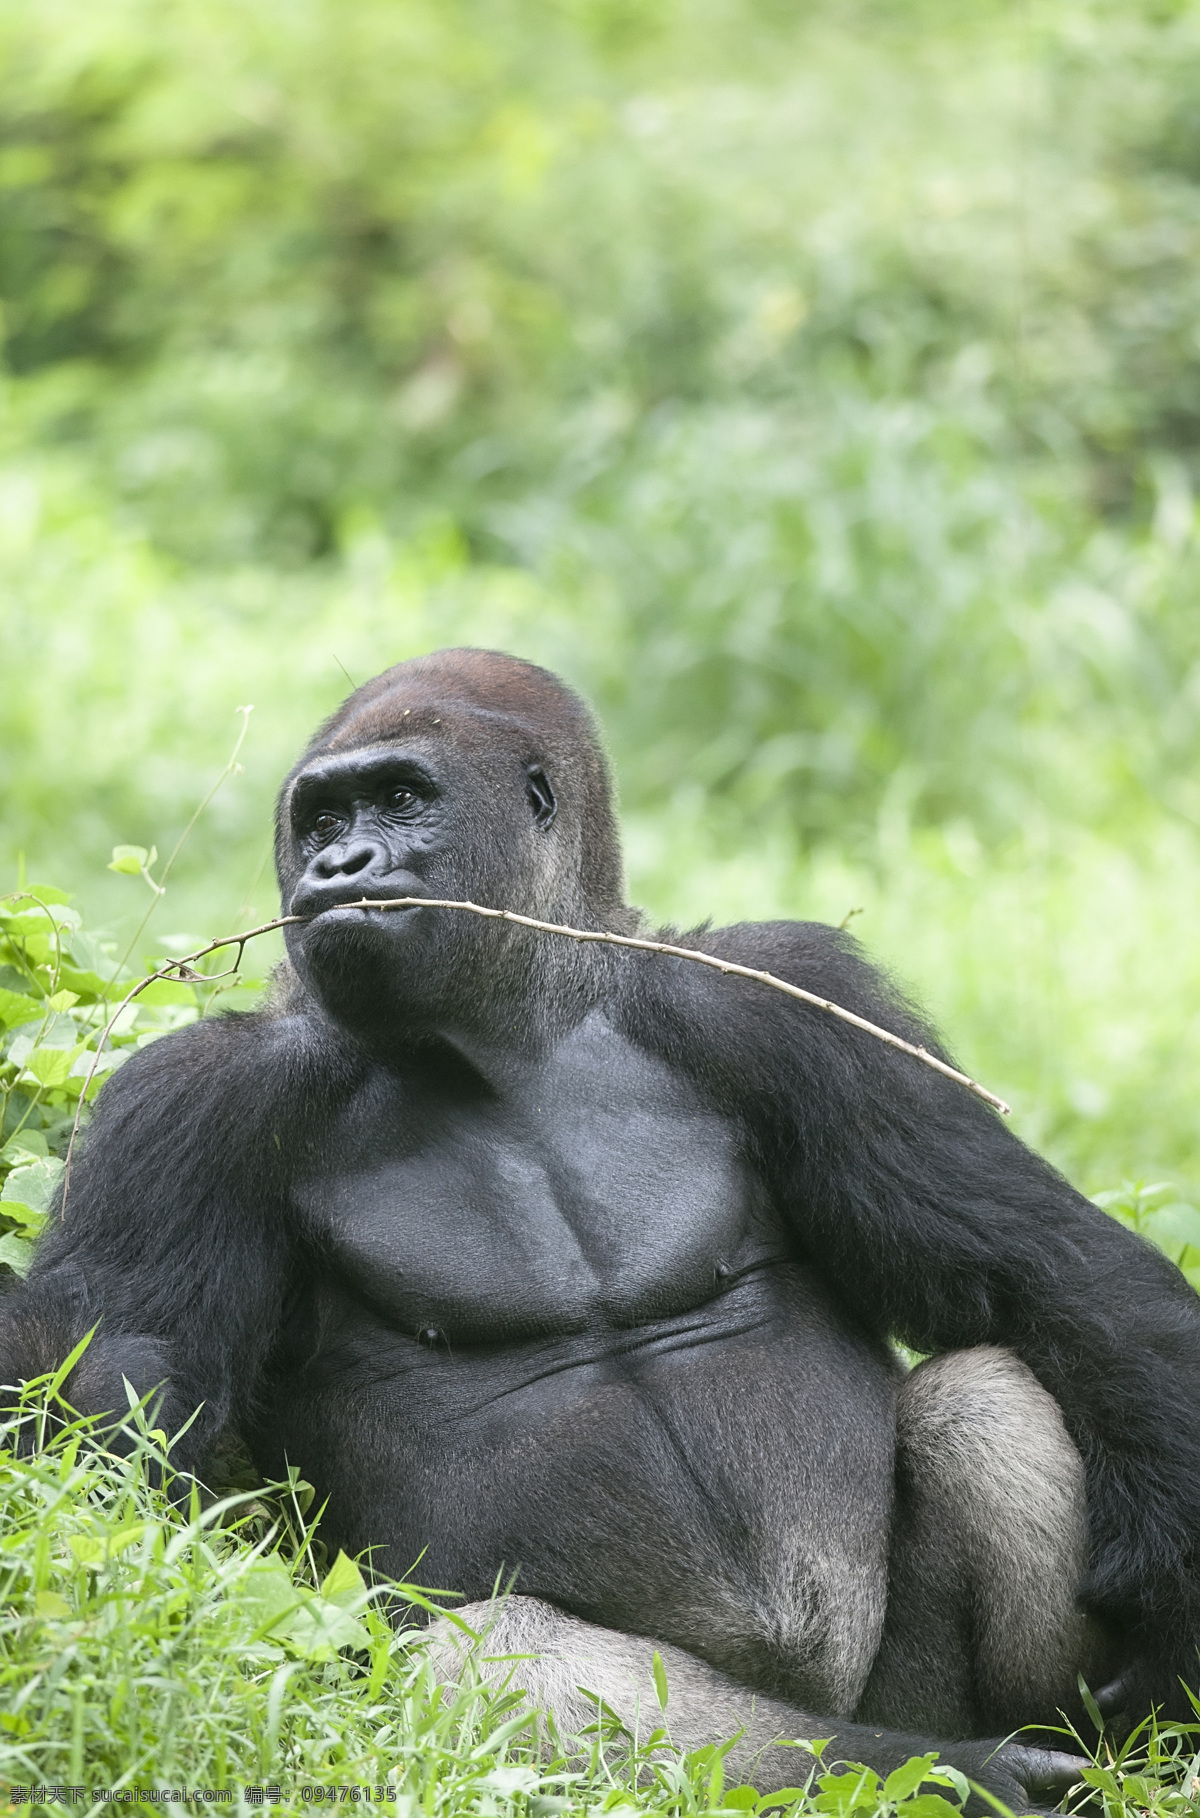 大猩猩摄影 大猩猩 摄影图片 猩猩 野生动物 动物世界 动物摄影 陆地动物 生物世界 绿色